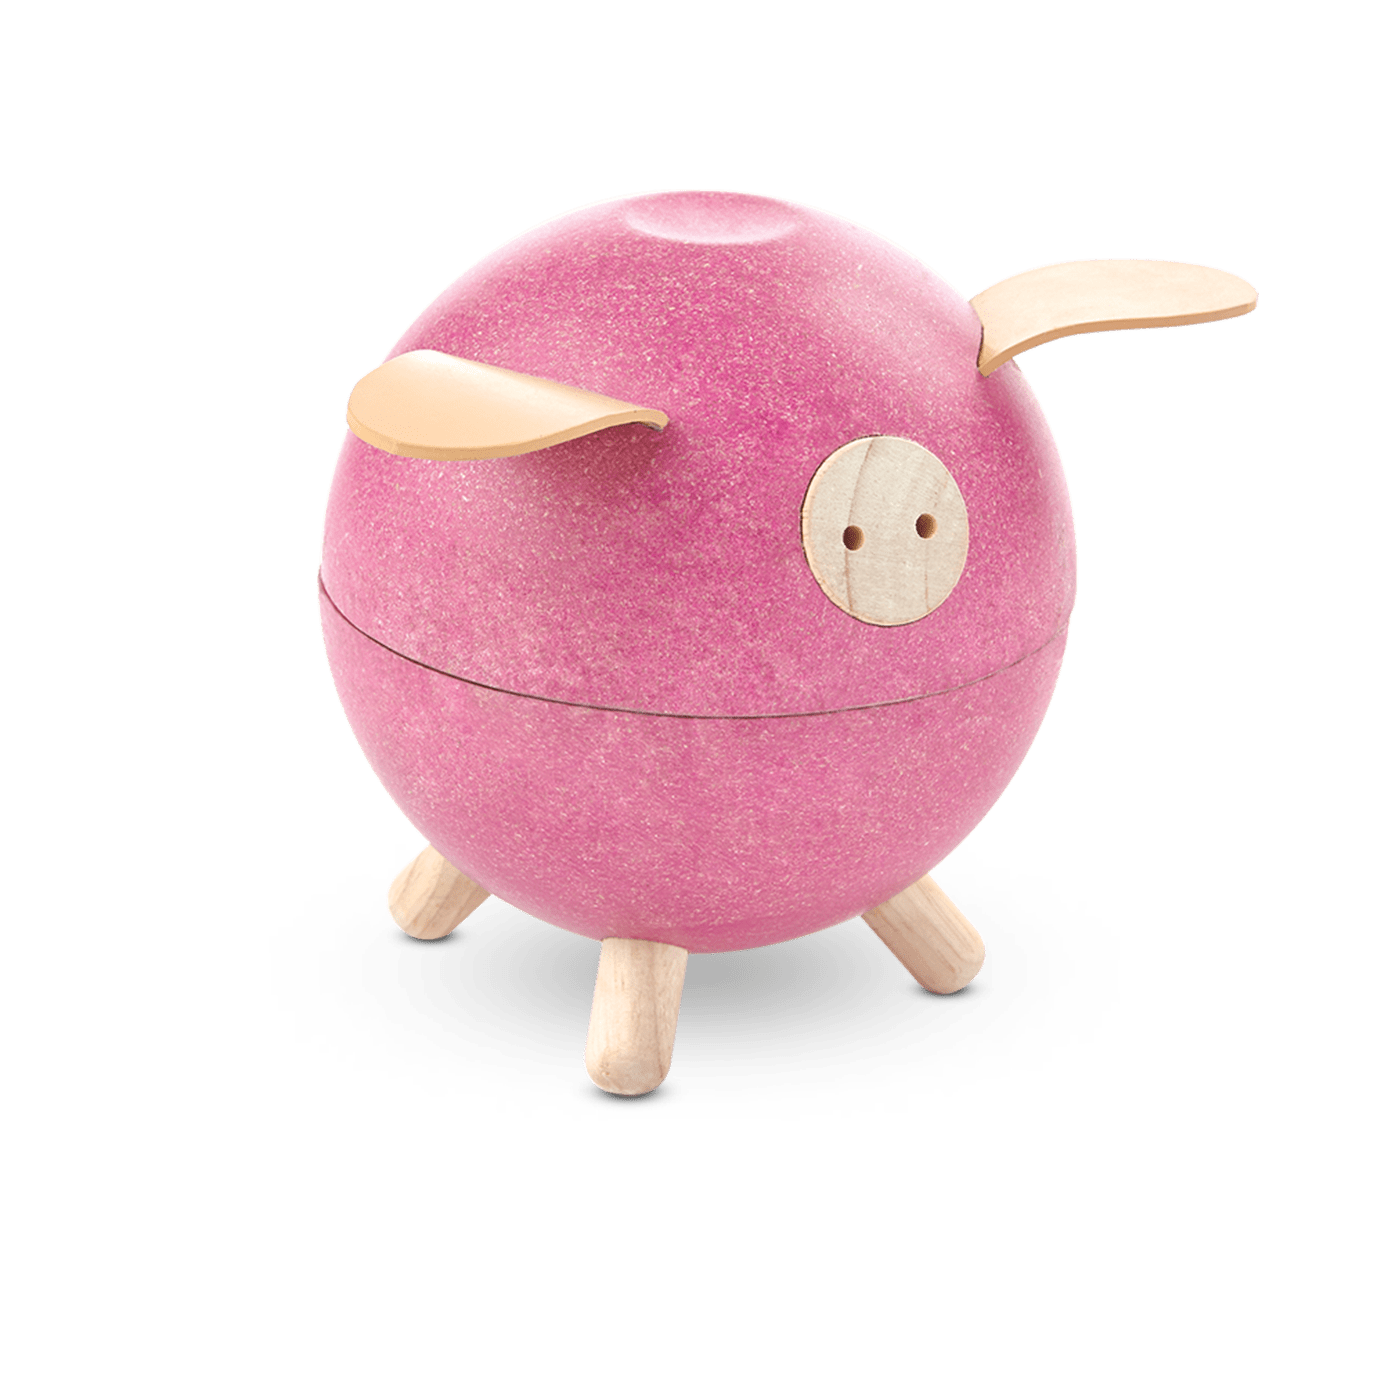 Piggy Bank - Pink Pig    